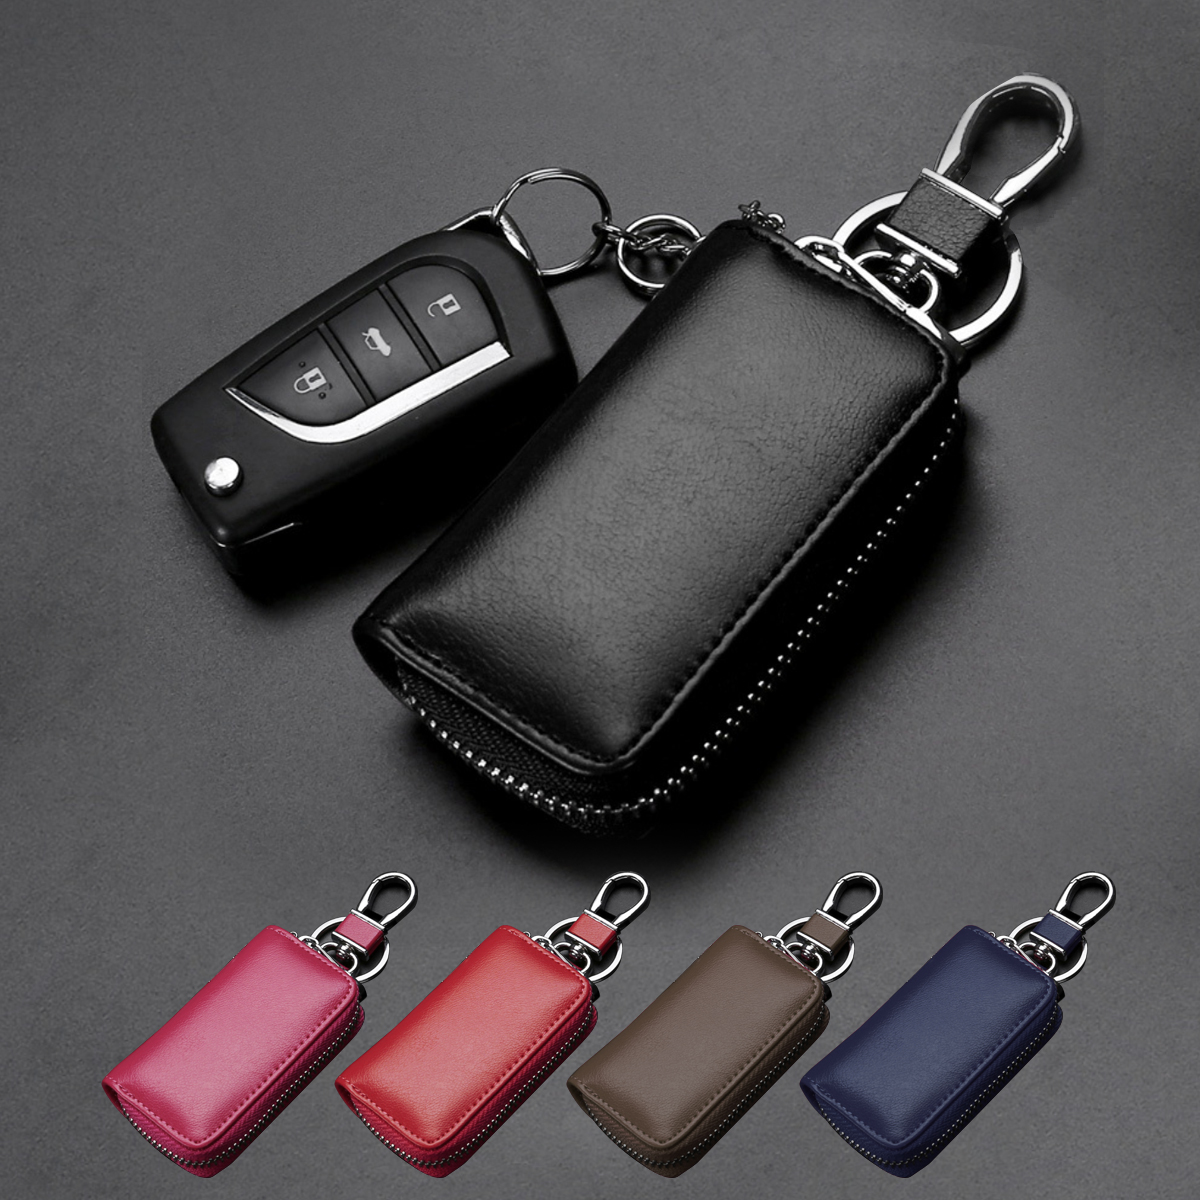 Car Remote KeyChain Pouch,Leather Key Holder,Car Key Holder,Car